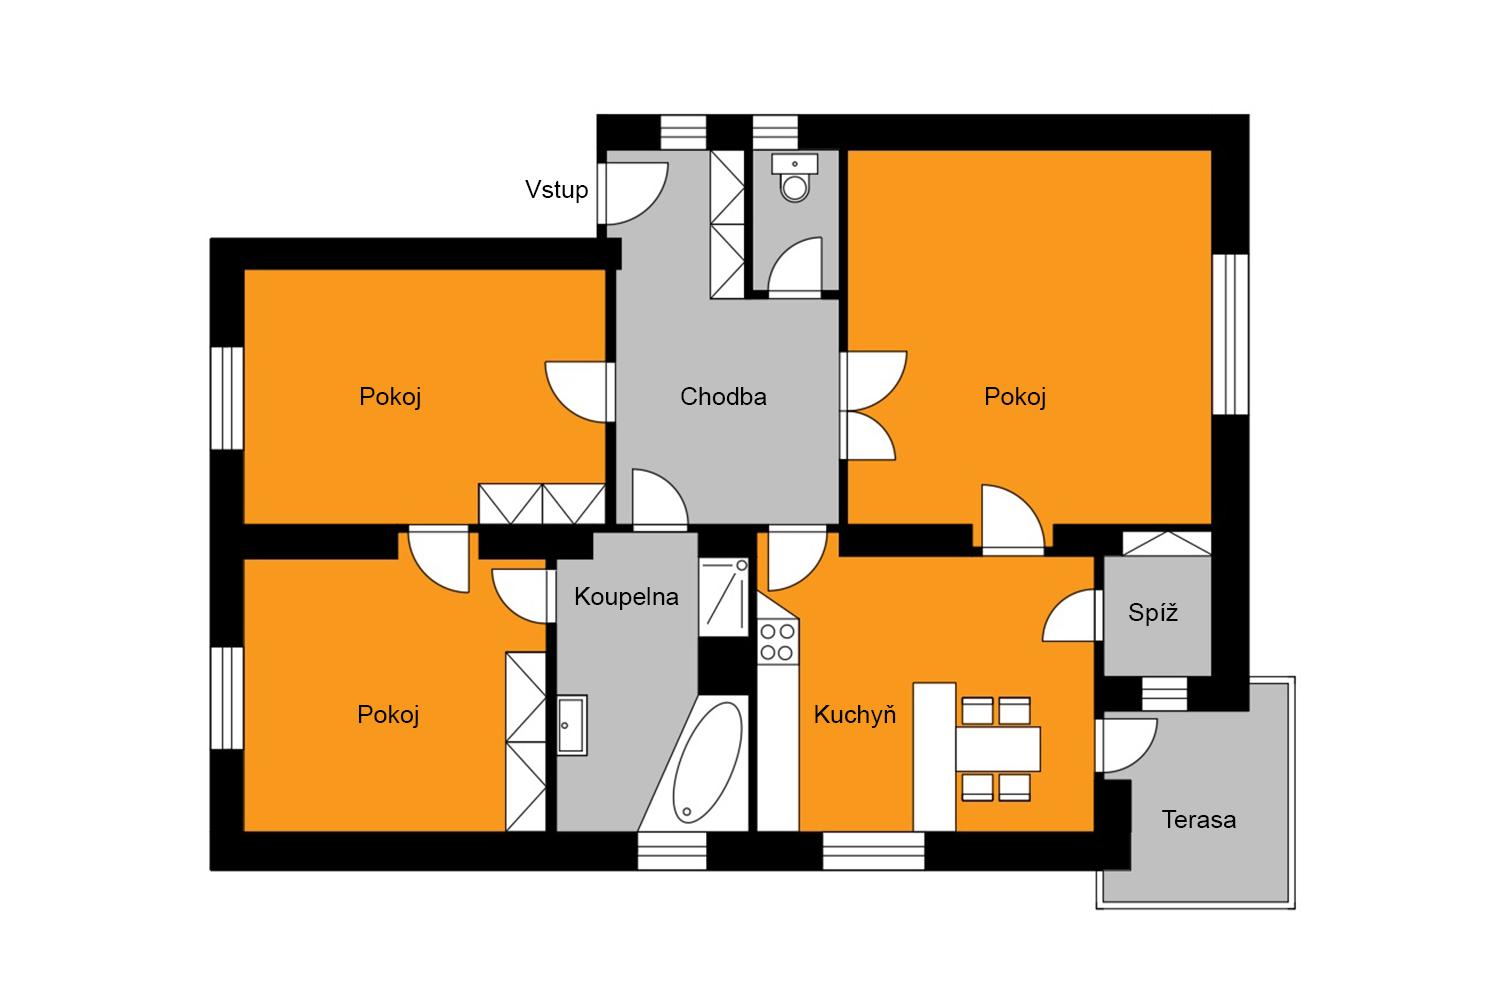 Exkluzivně nabízeme k prodeji byt 3+1 s tersou 90,7 m2 a nebytový prostor 86,6 m2 po kompletní rekon, obrázek č. 2